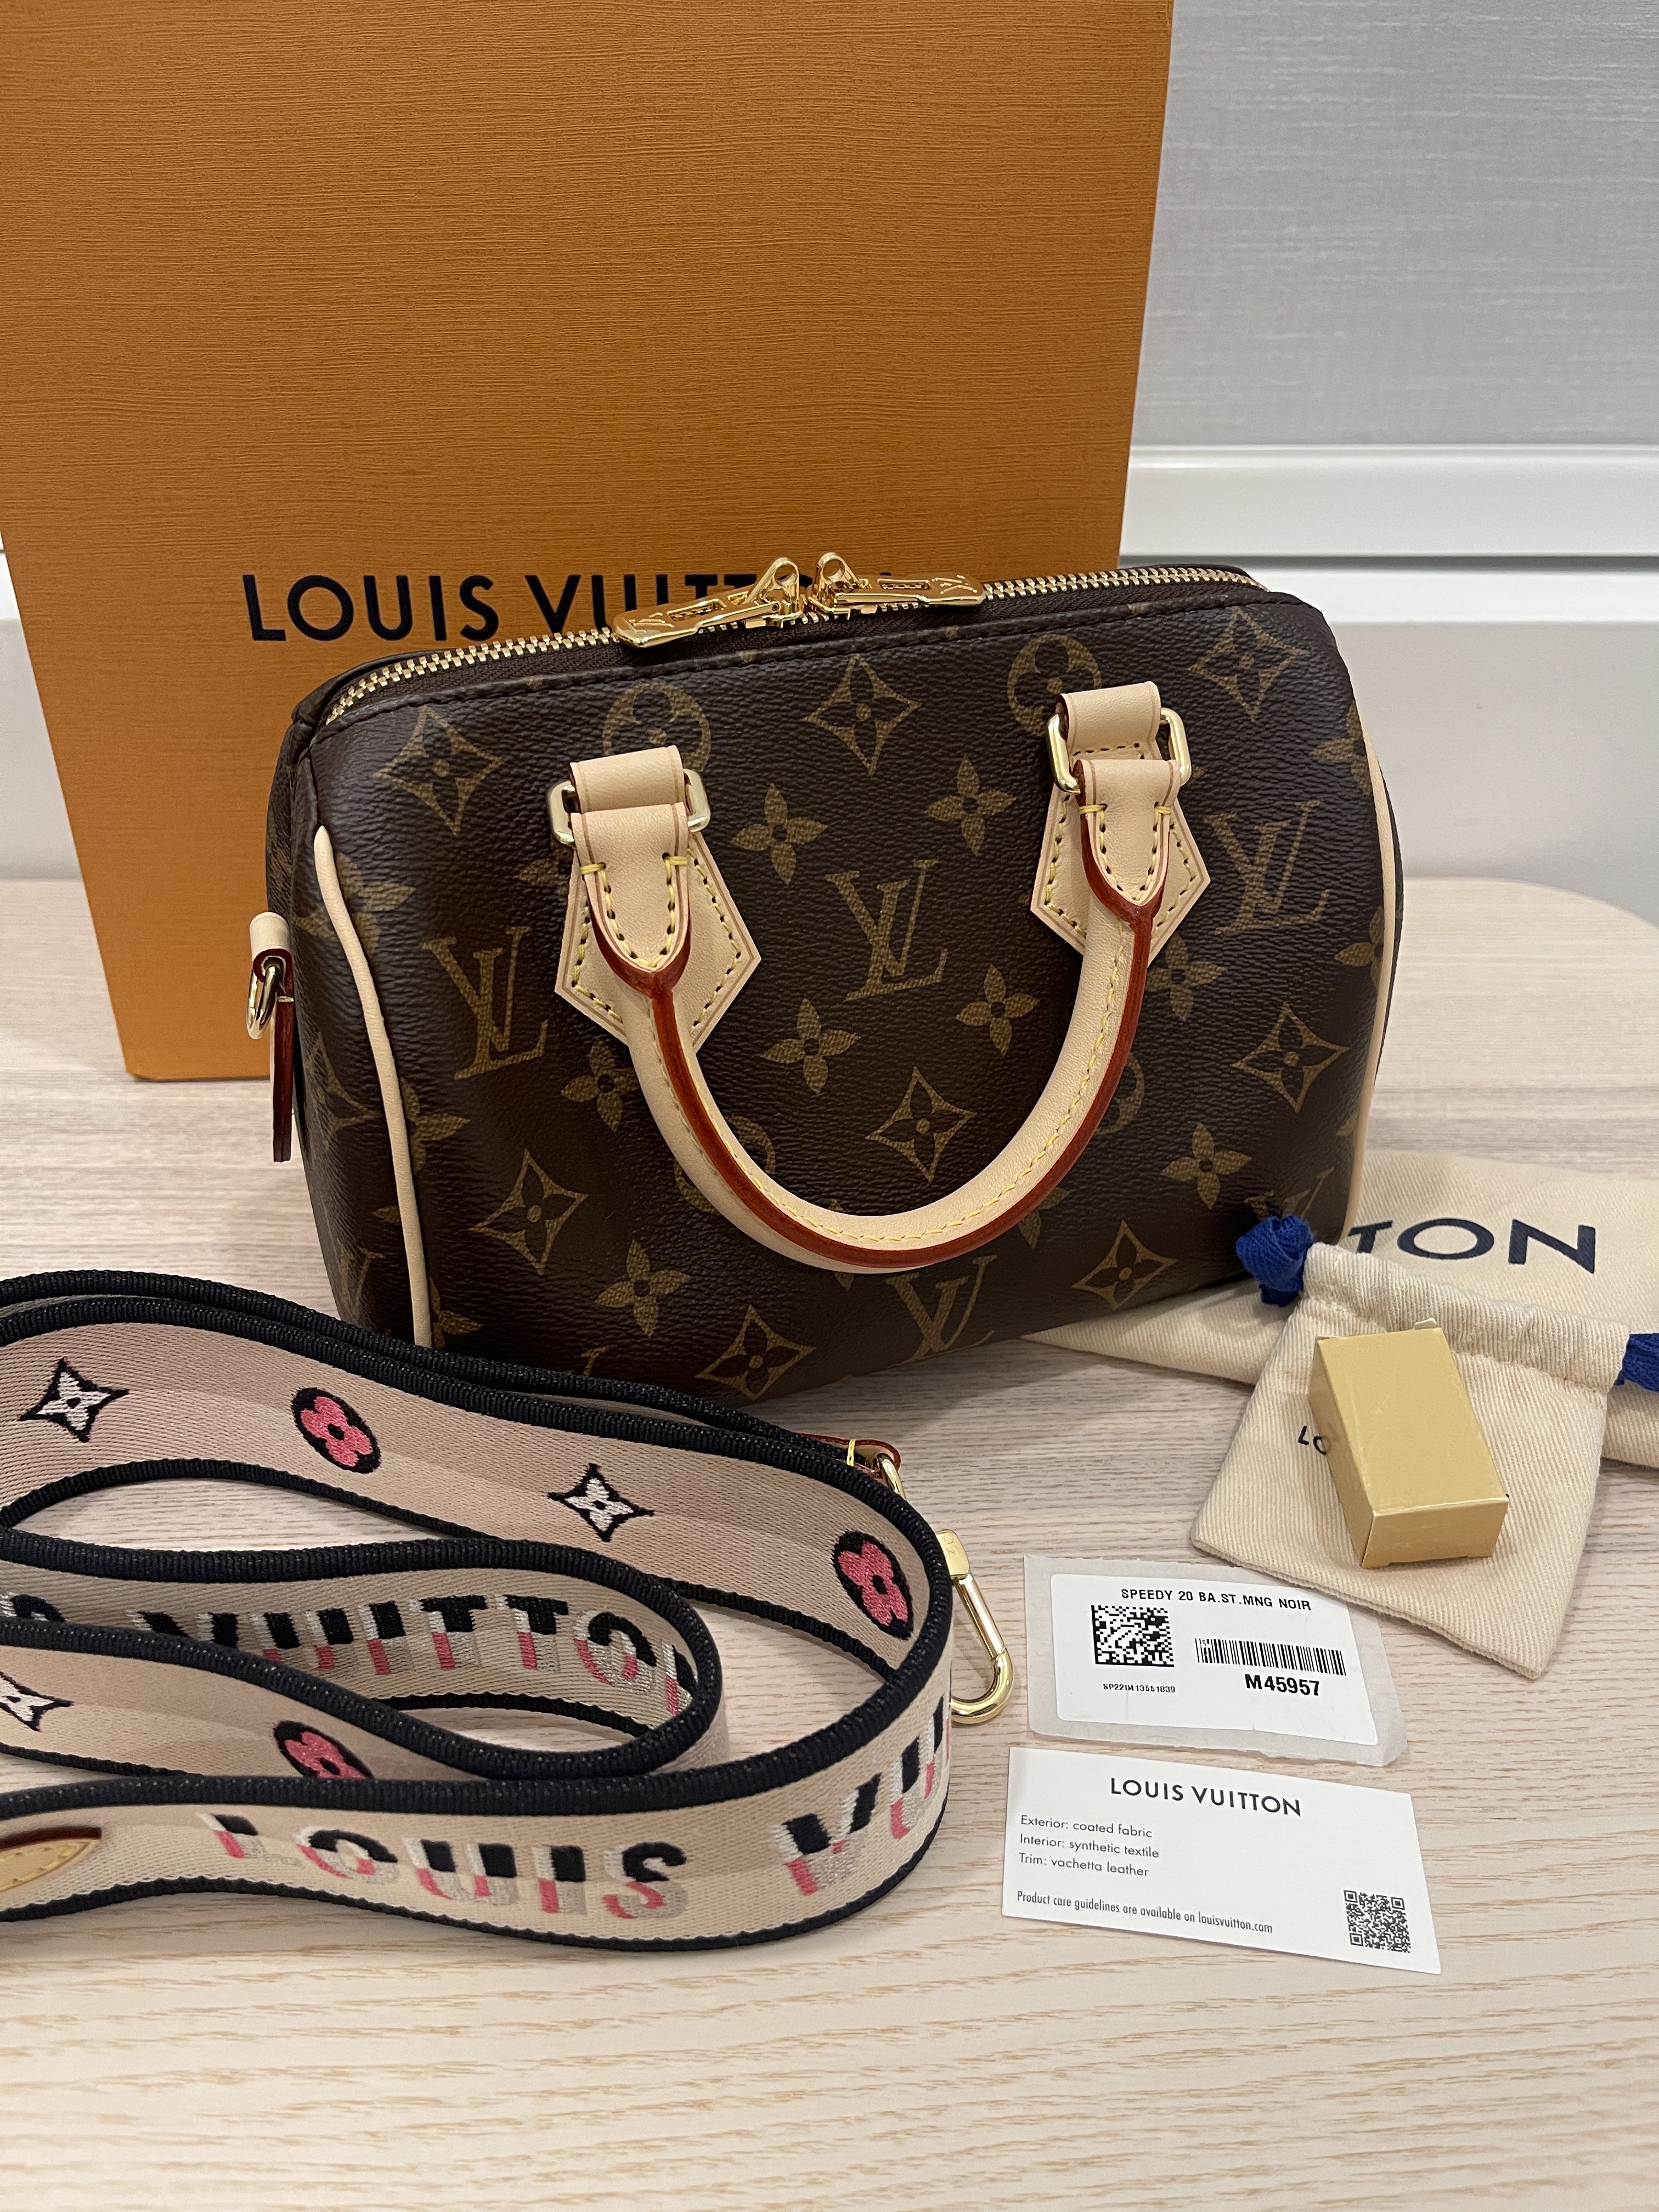 Louis VuittonSPEEDY 20 